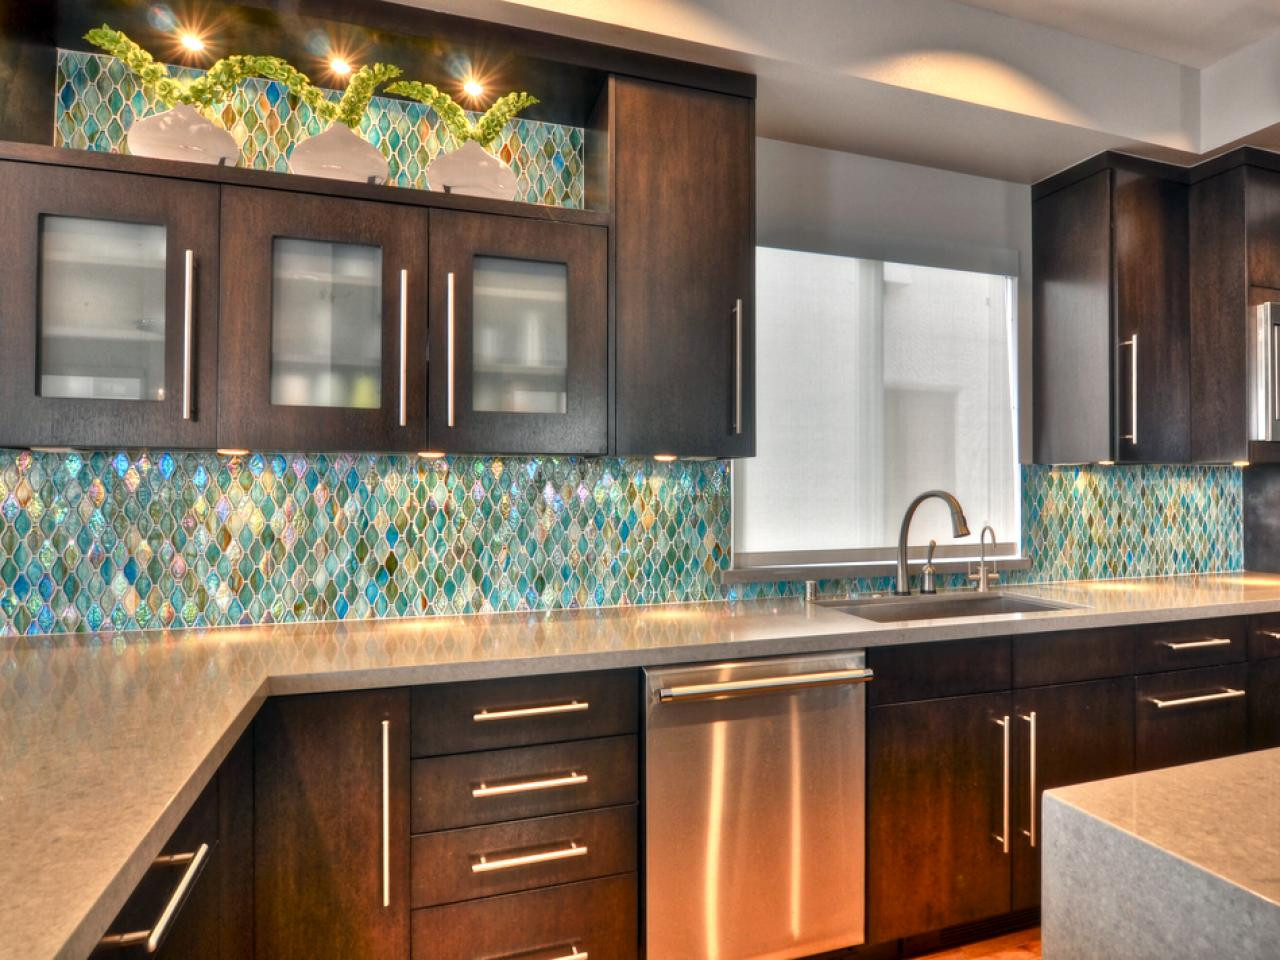 Kitchen Backsplash Options
 75 Kitchen Backsplash Ideas for 2020 Tile Glass Metal etc